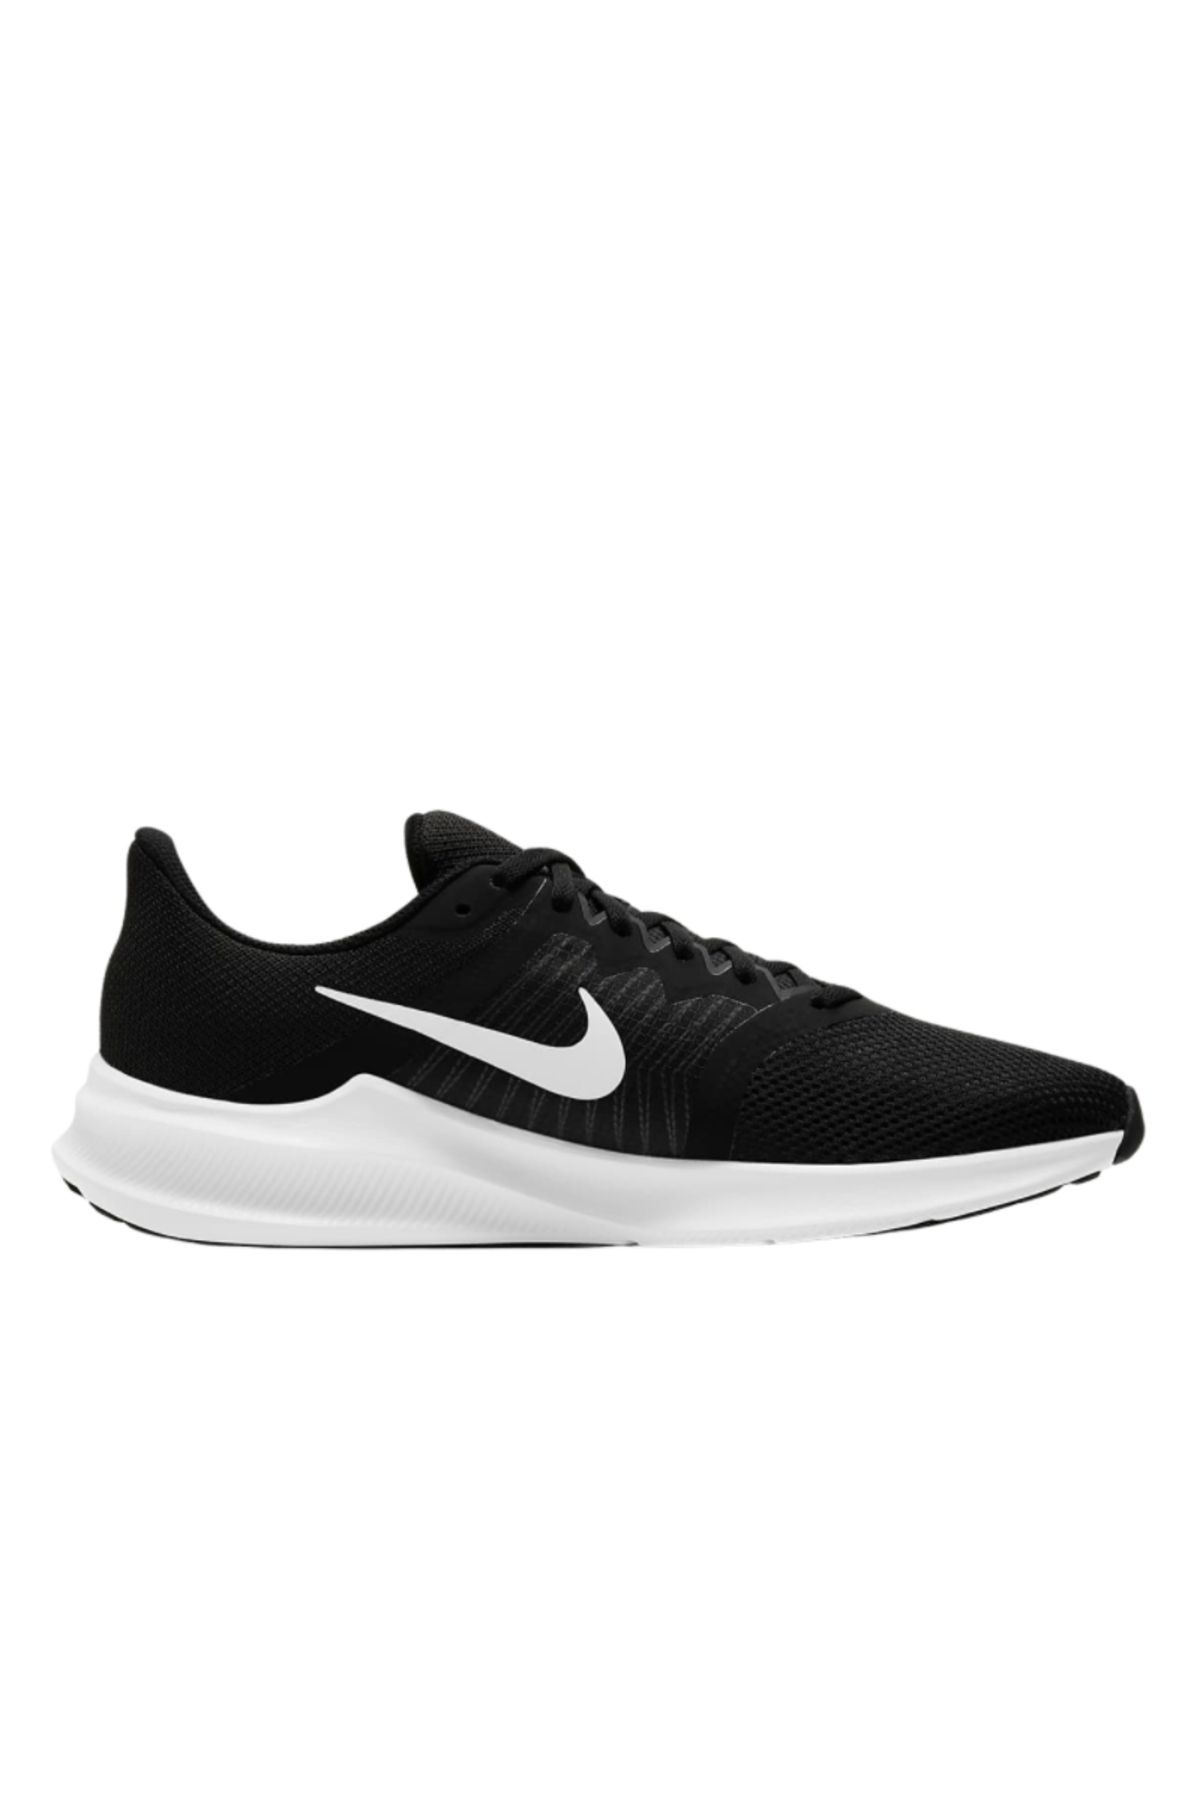 Nike Downshifter 11 Erkek Siyah Koşu Ayakkabısı Cw3411-006